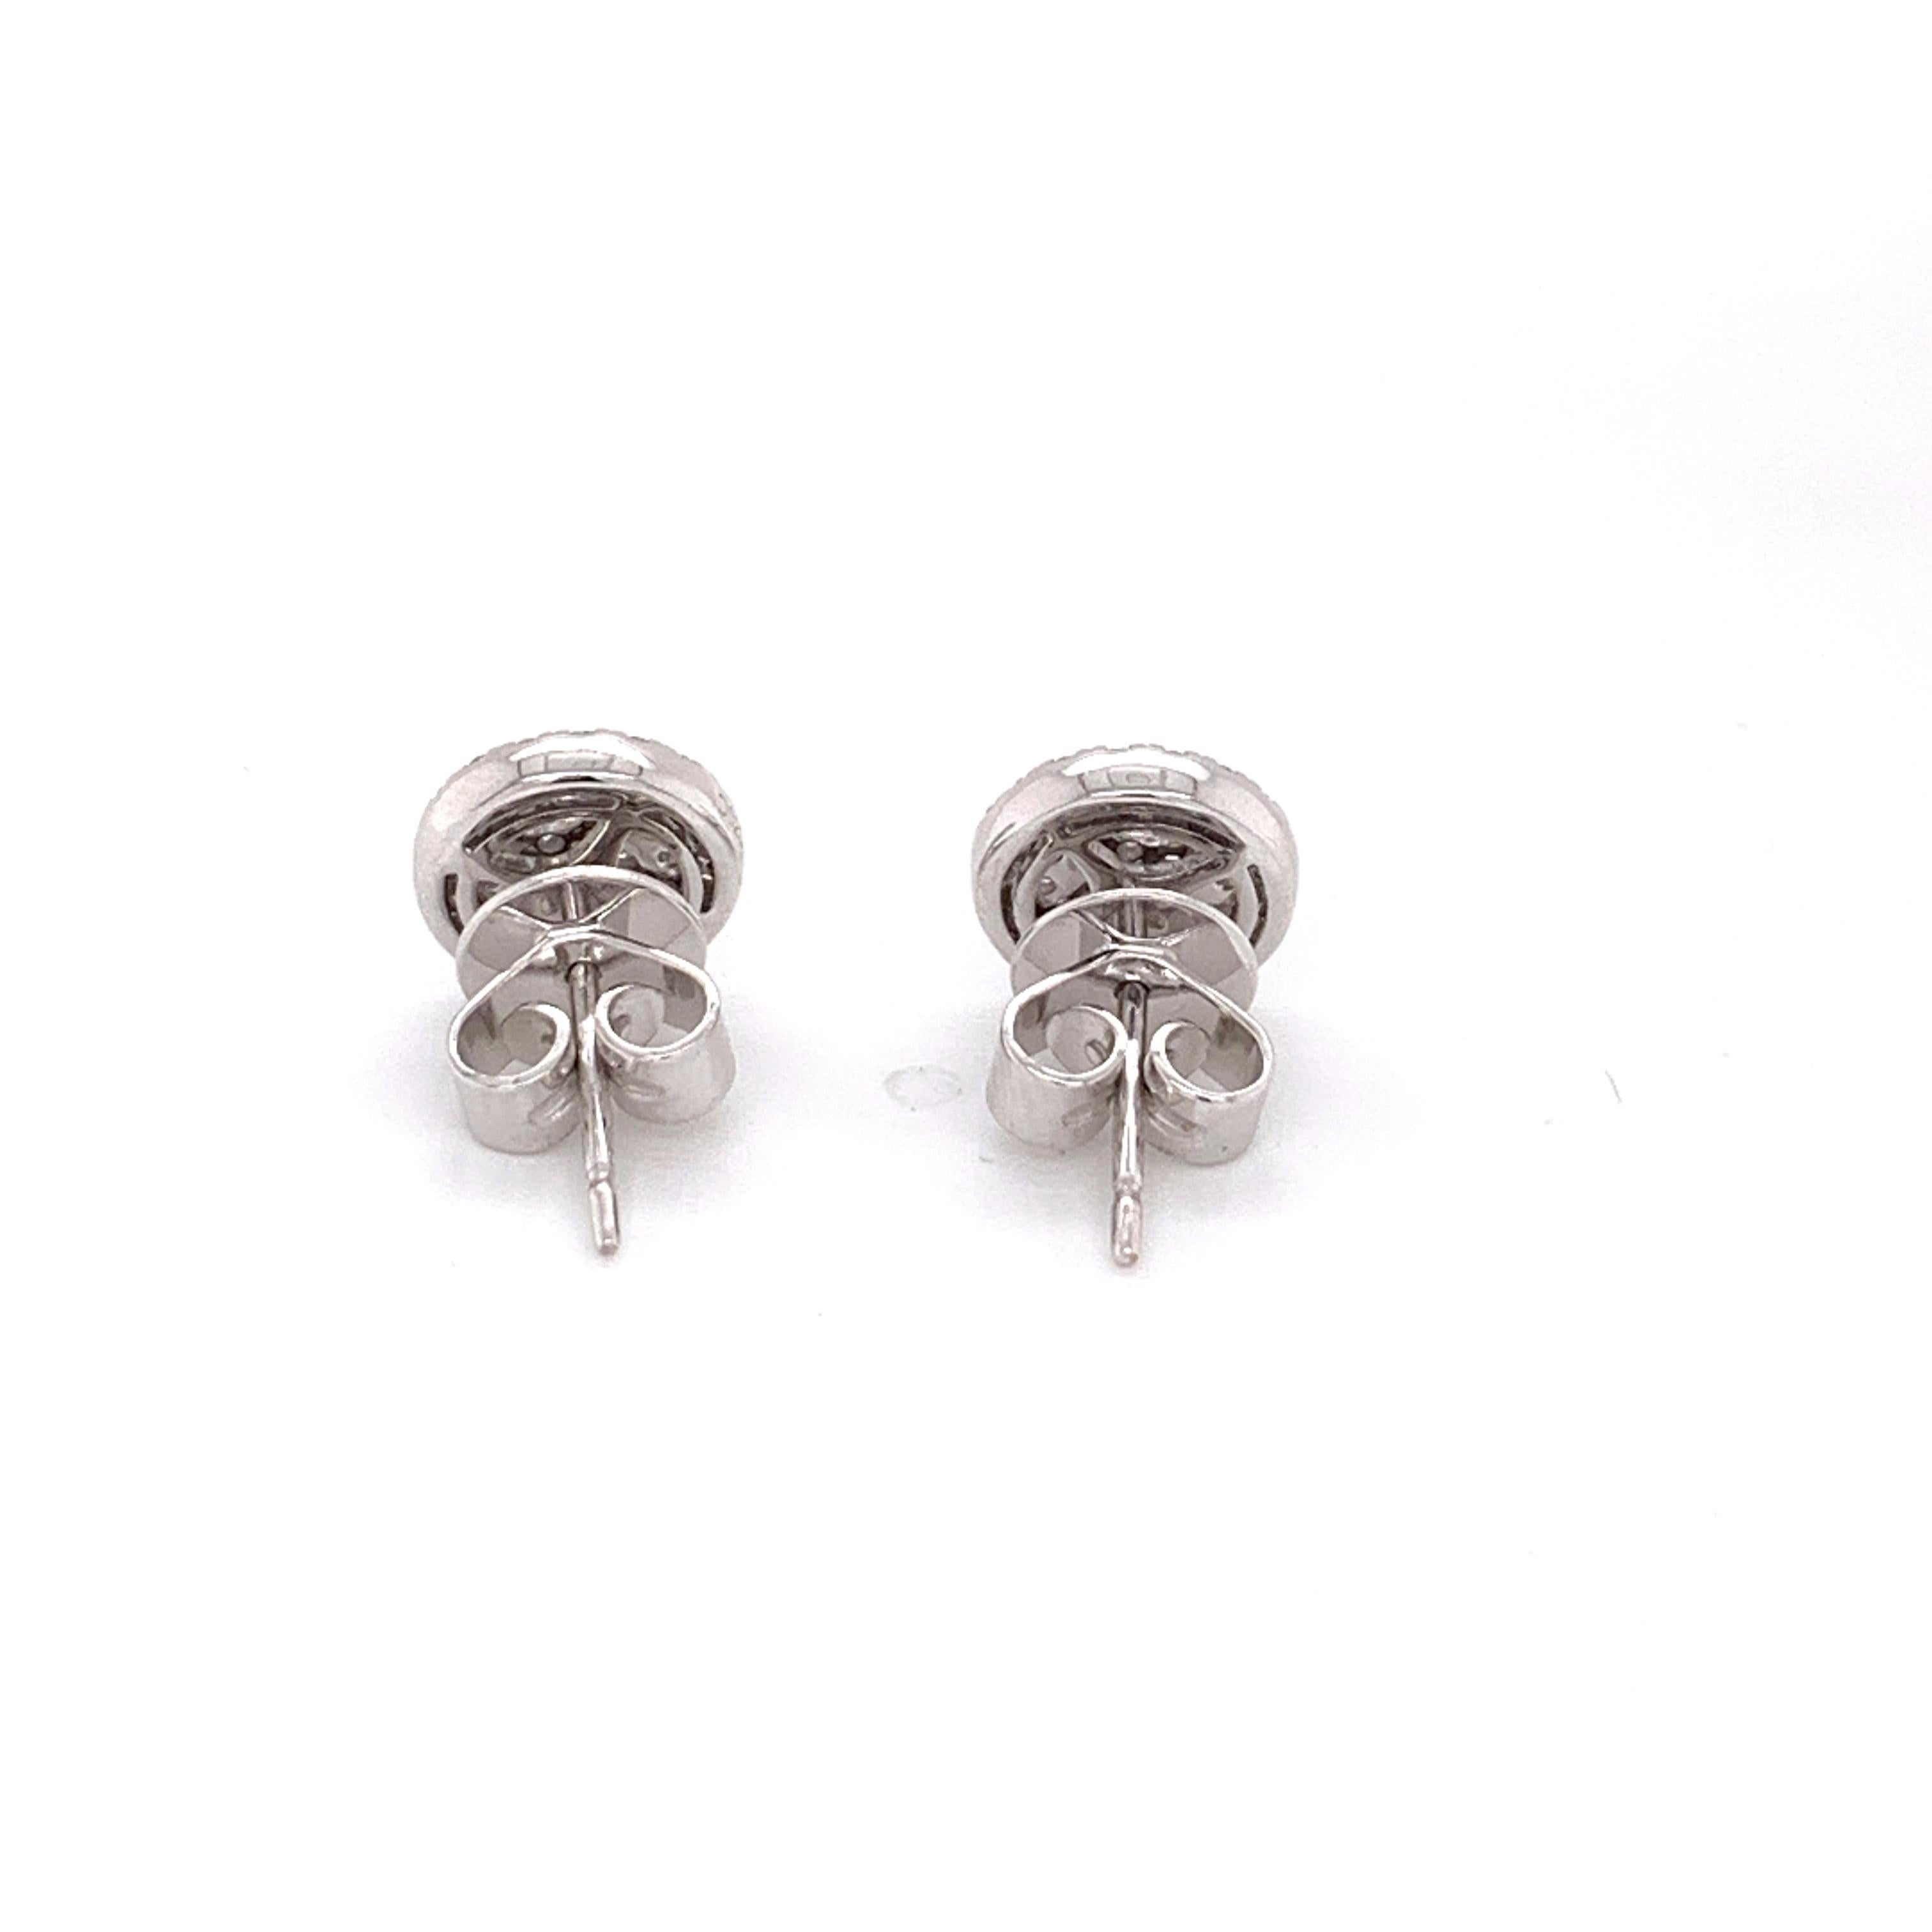 Brilliant Cut Diamond Pavee / Cluster Stud Earrings